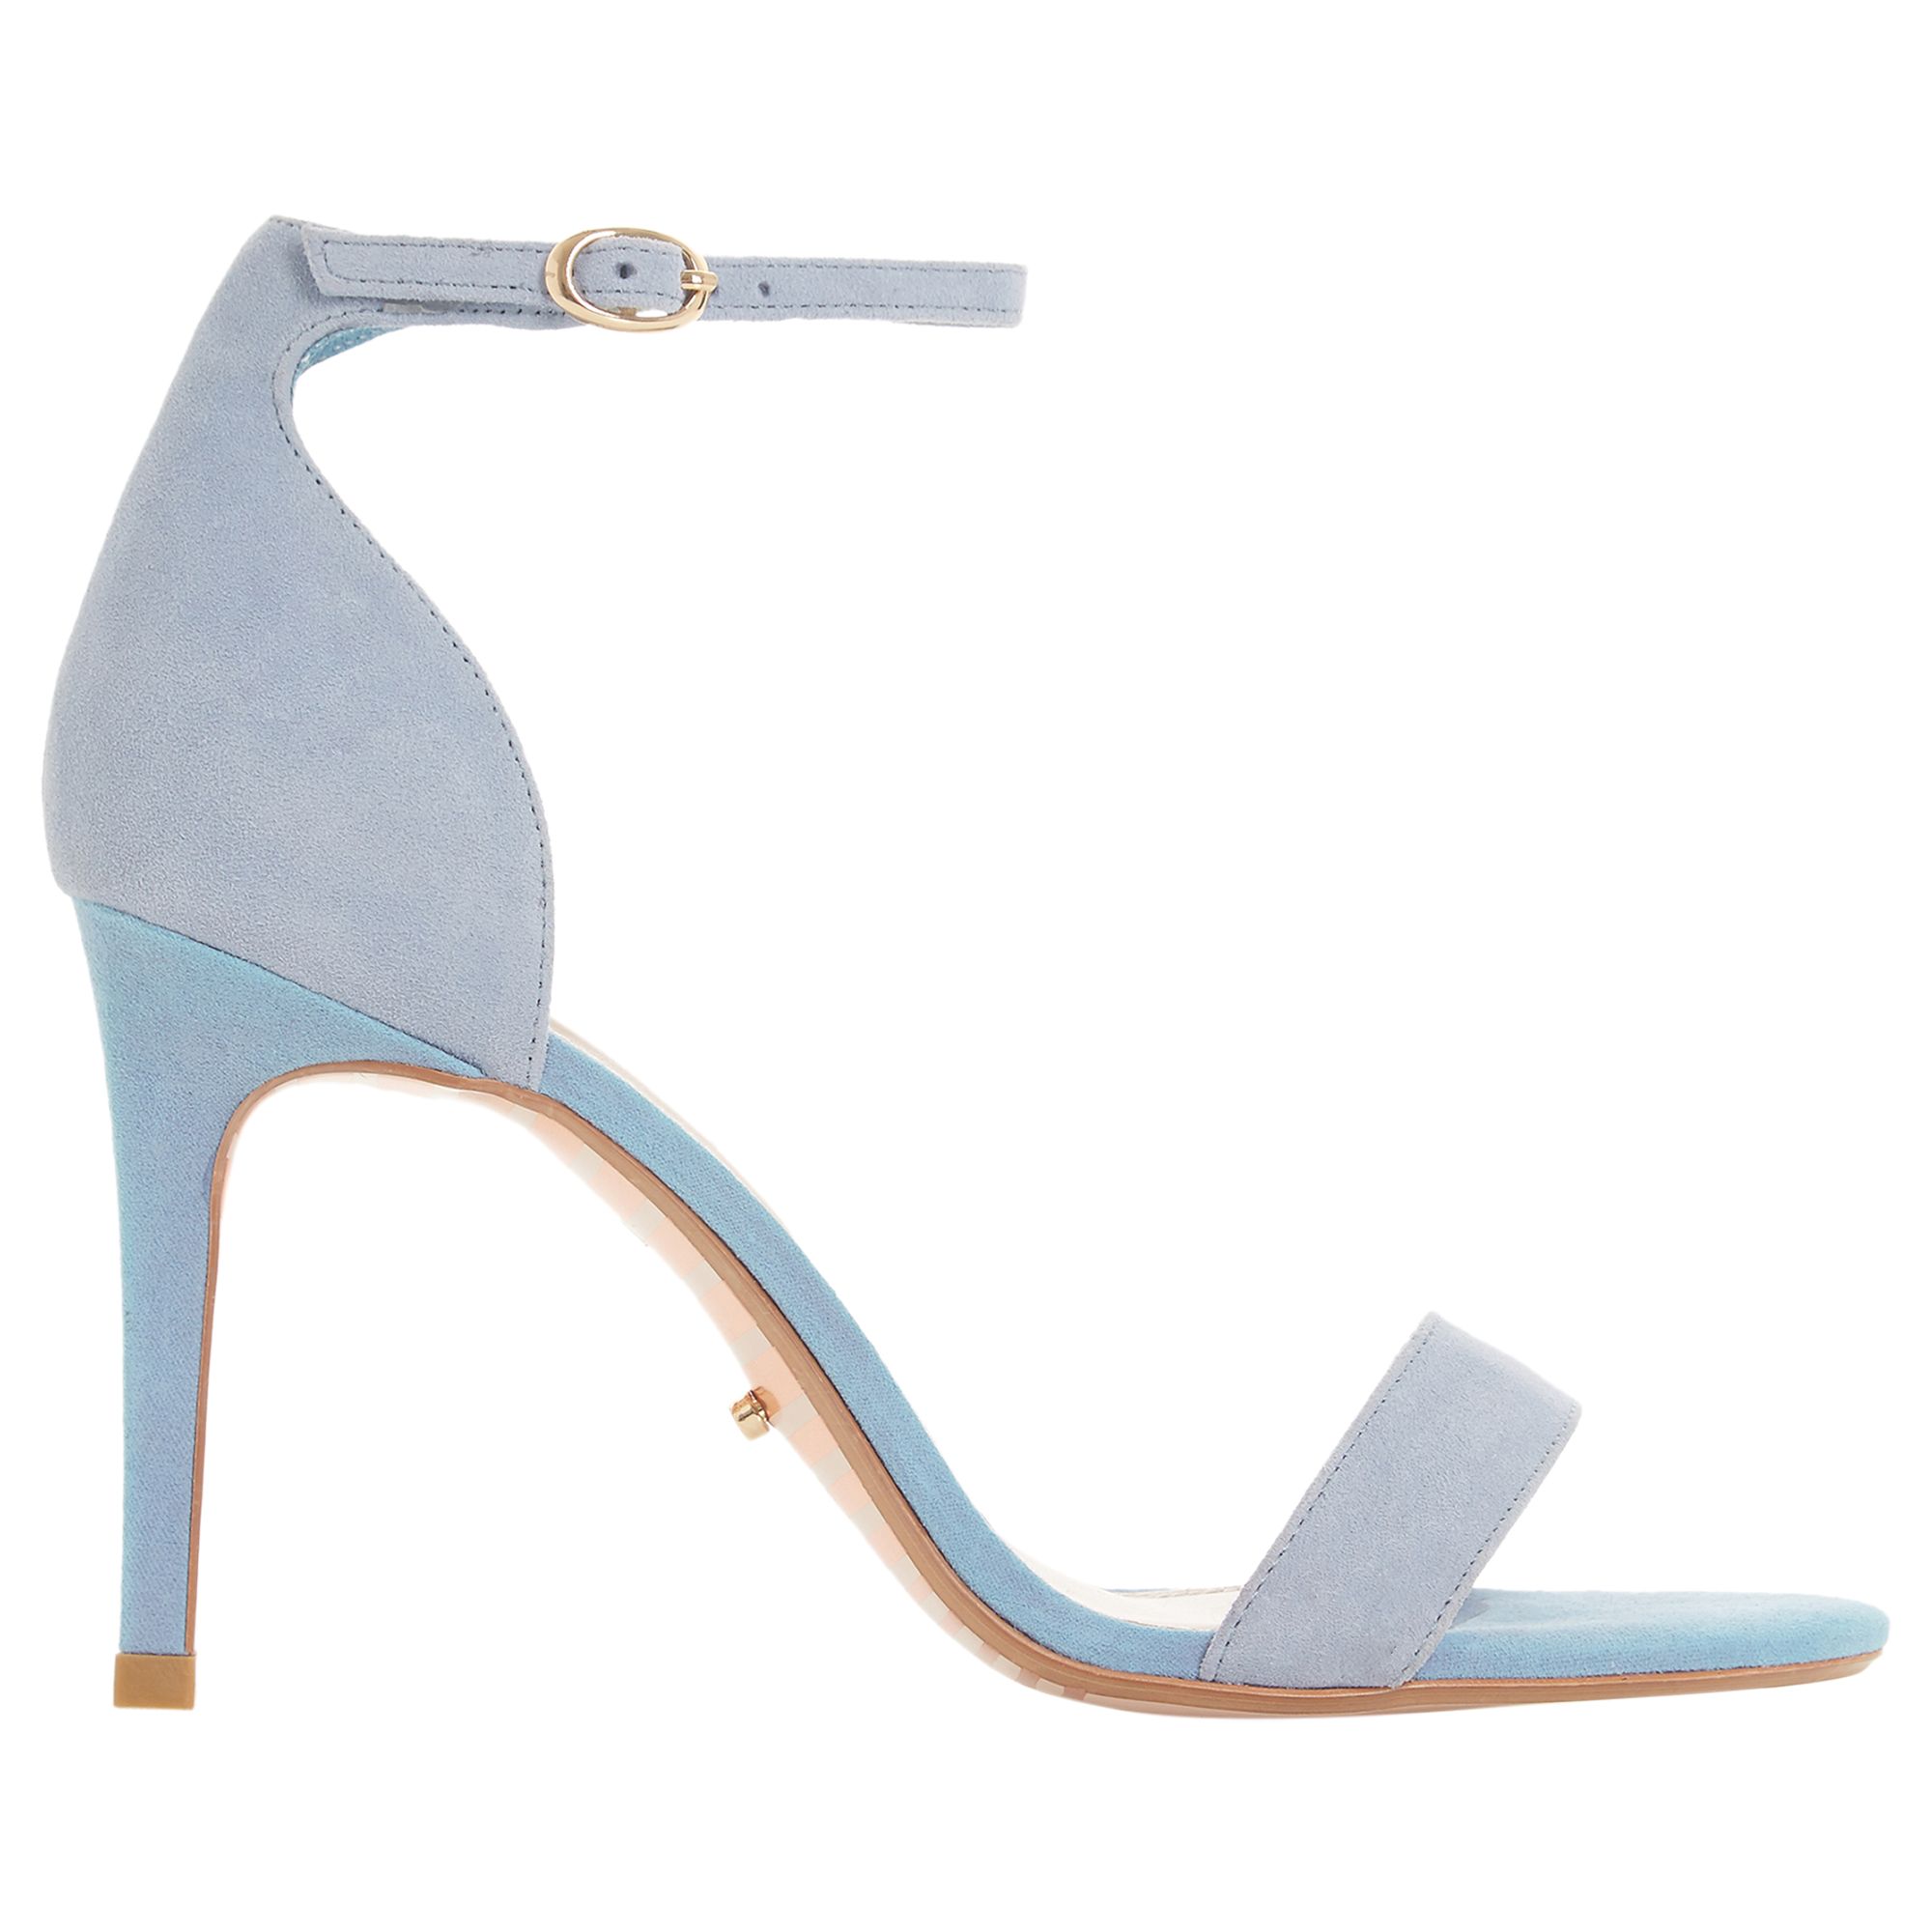 blue suede sandals heels